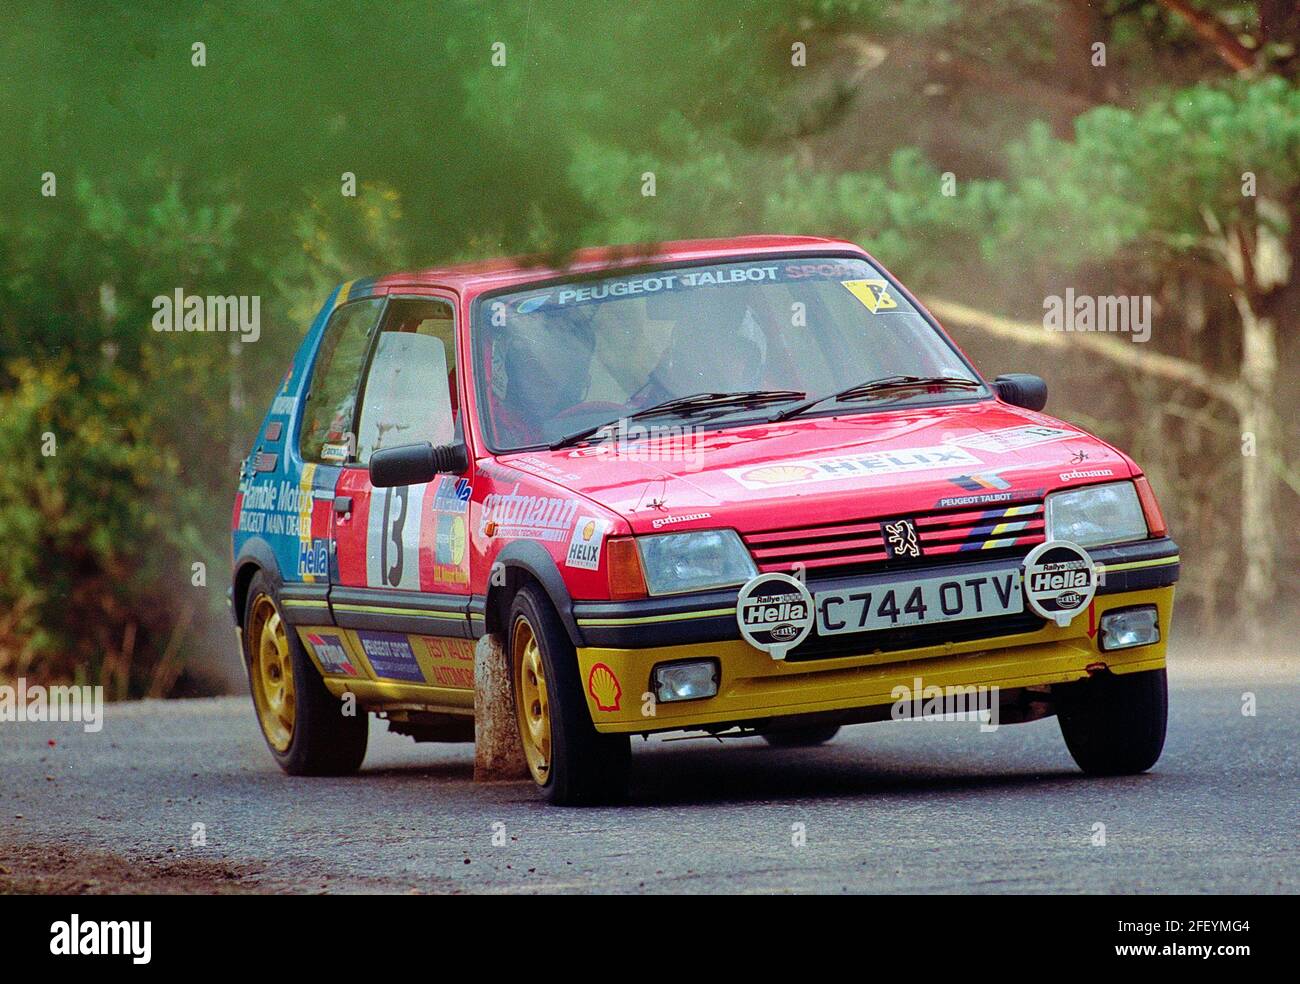 Peugeot 205 voiture de rallye GTI participe à l'événement de ralliement de voiture de club à Avon Park en janvier 1993. Banque D'Images